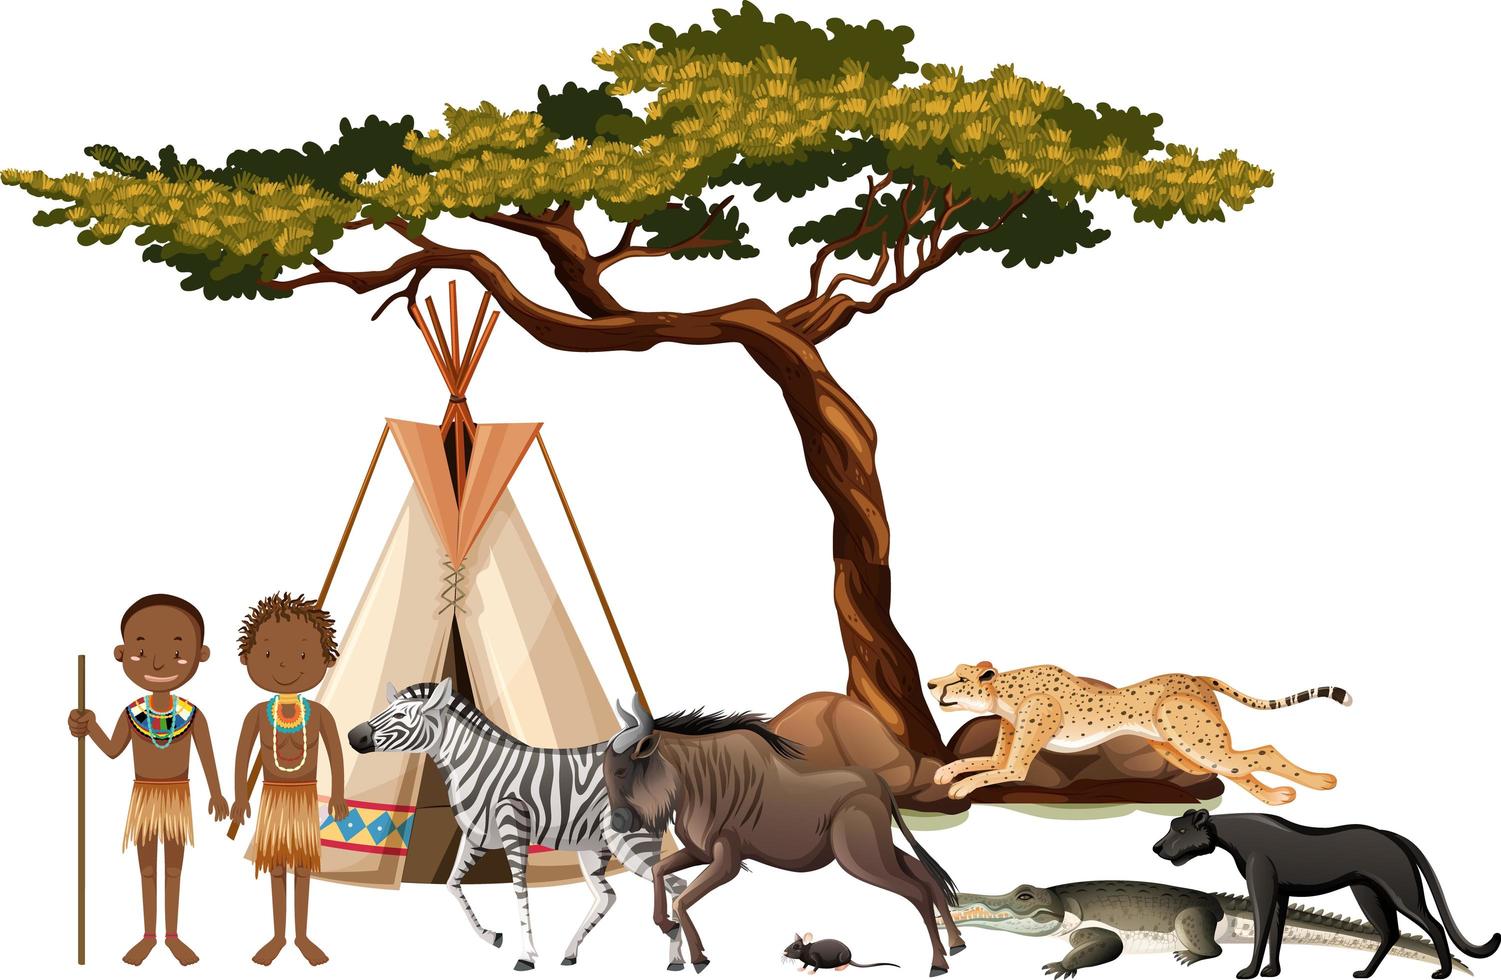 tribù africana con un gruppo di animali selvatici africani su sfondo bianco vettore